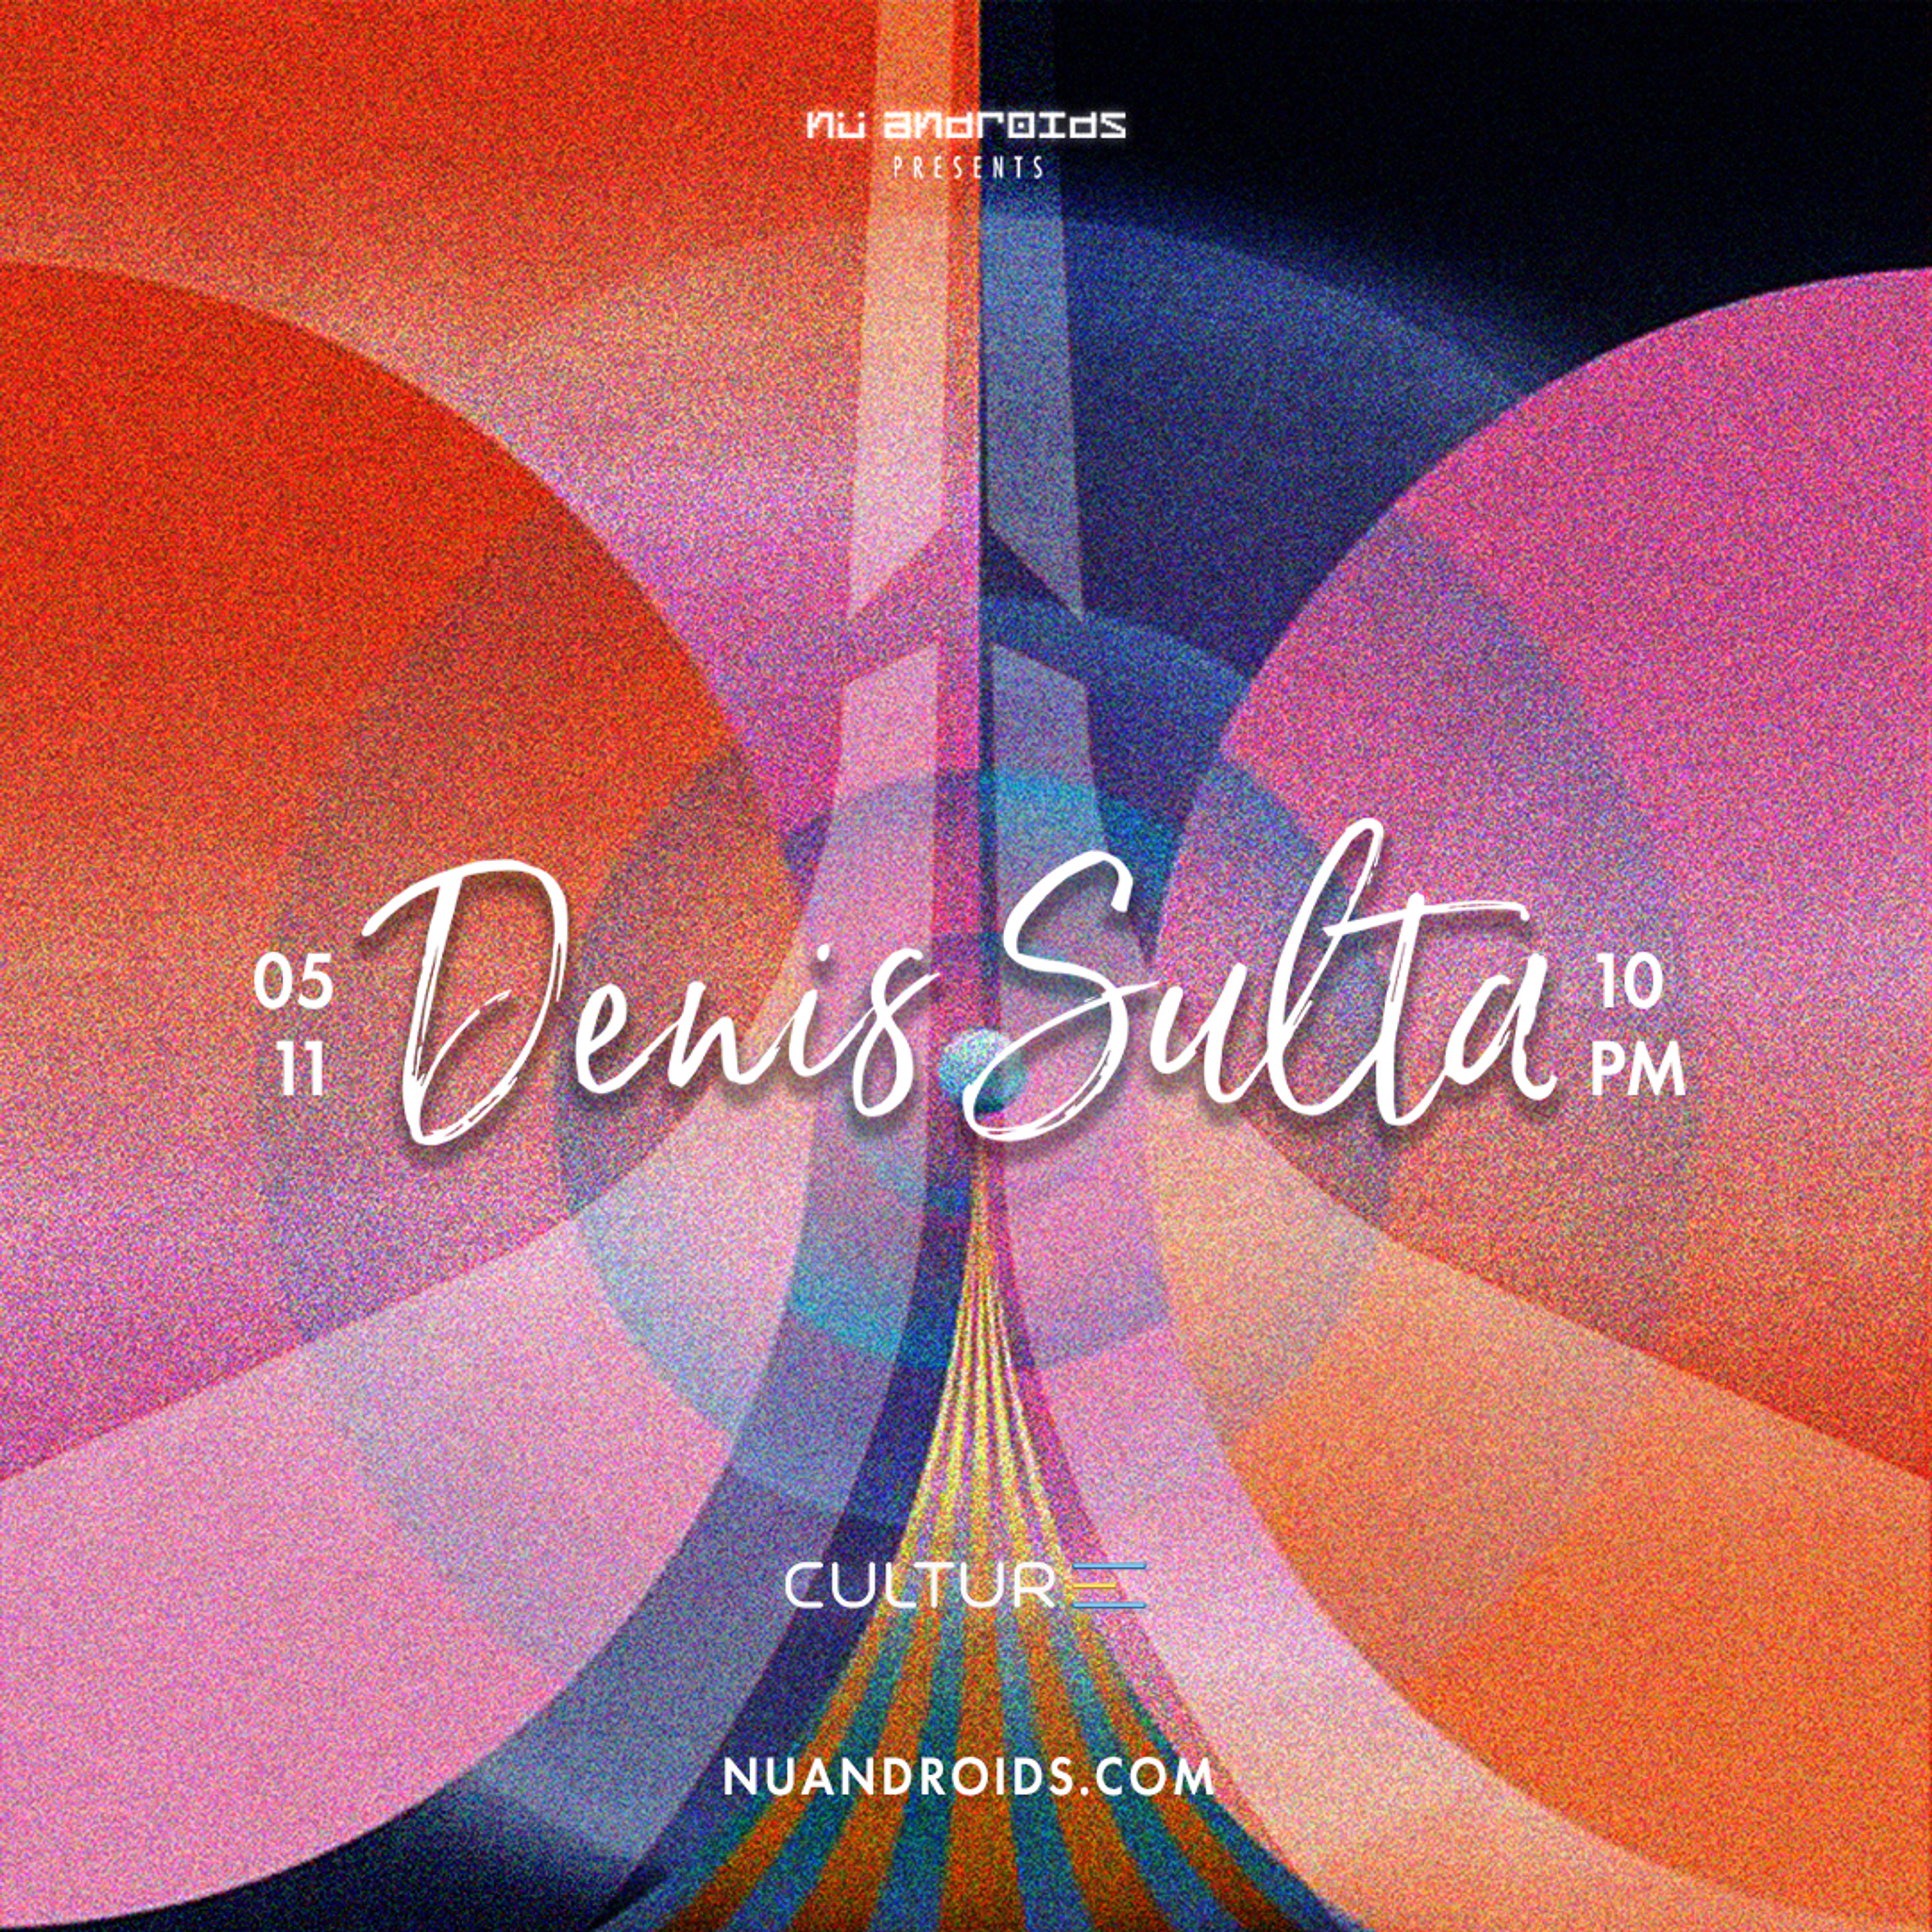 Flyer image for Denis Sulta